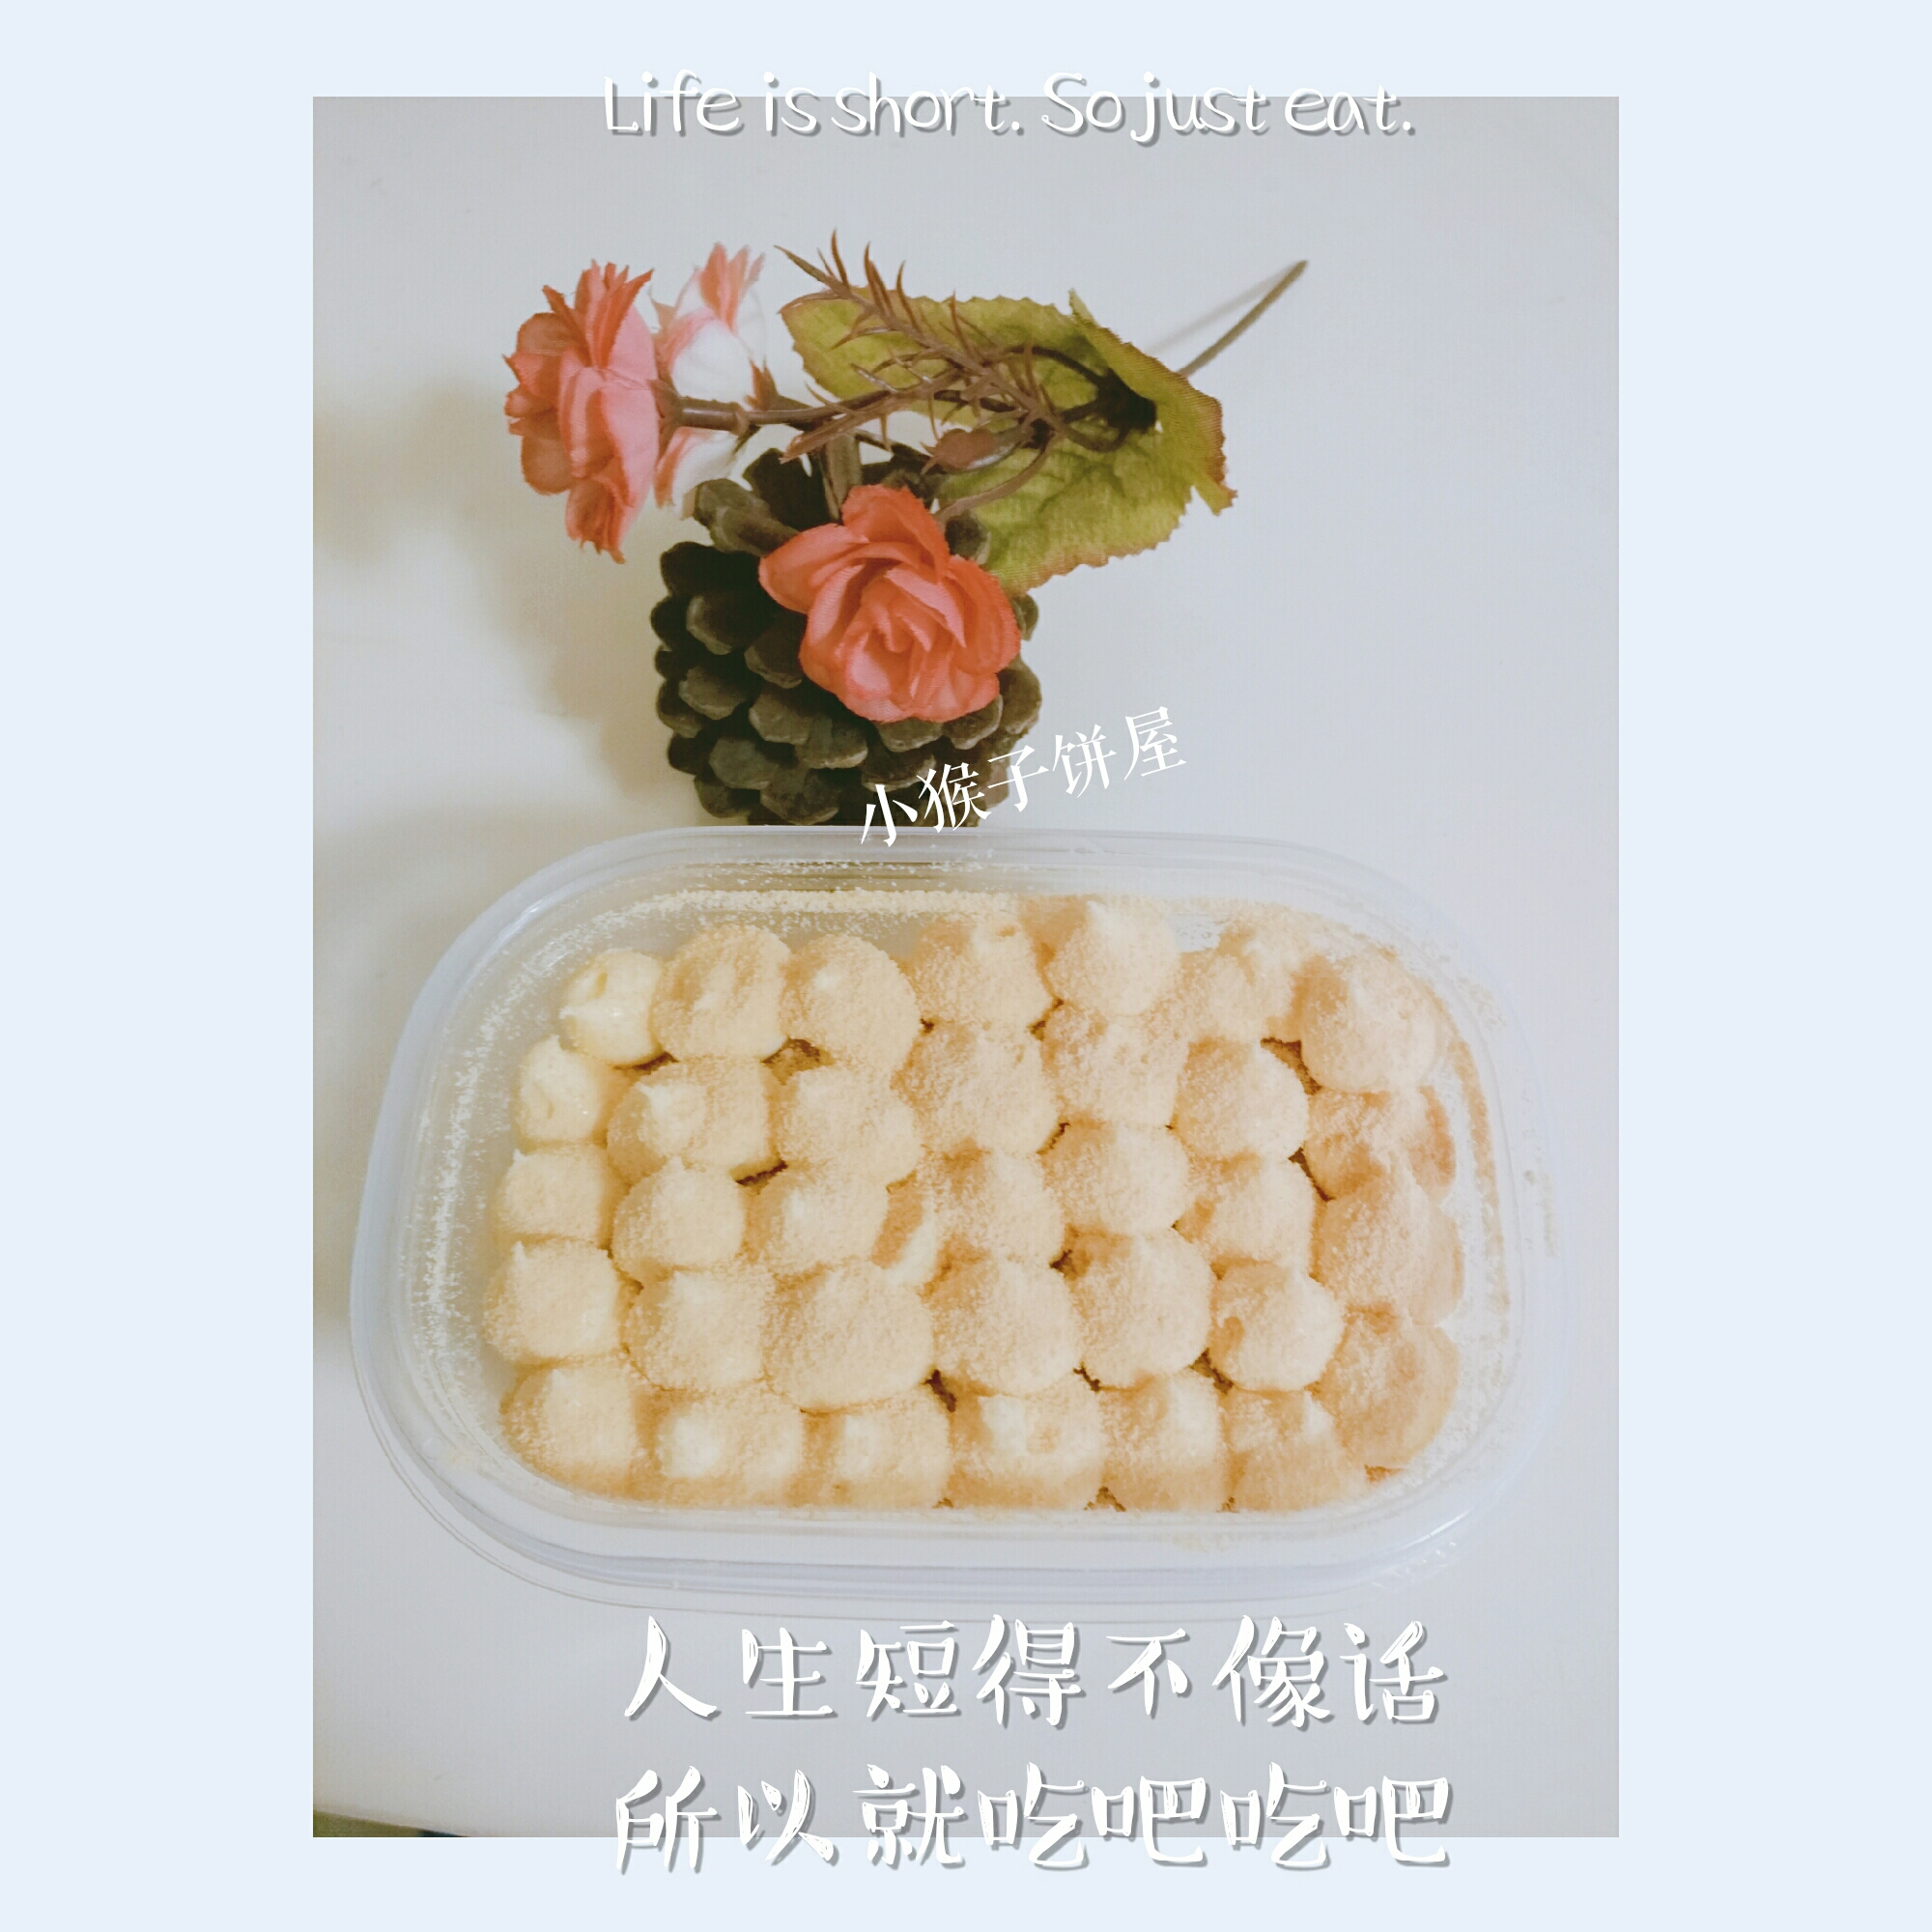 网红日式豆乳盒子蛋糕